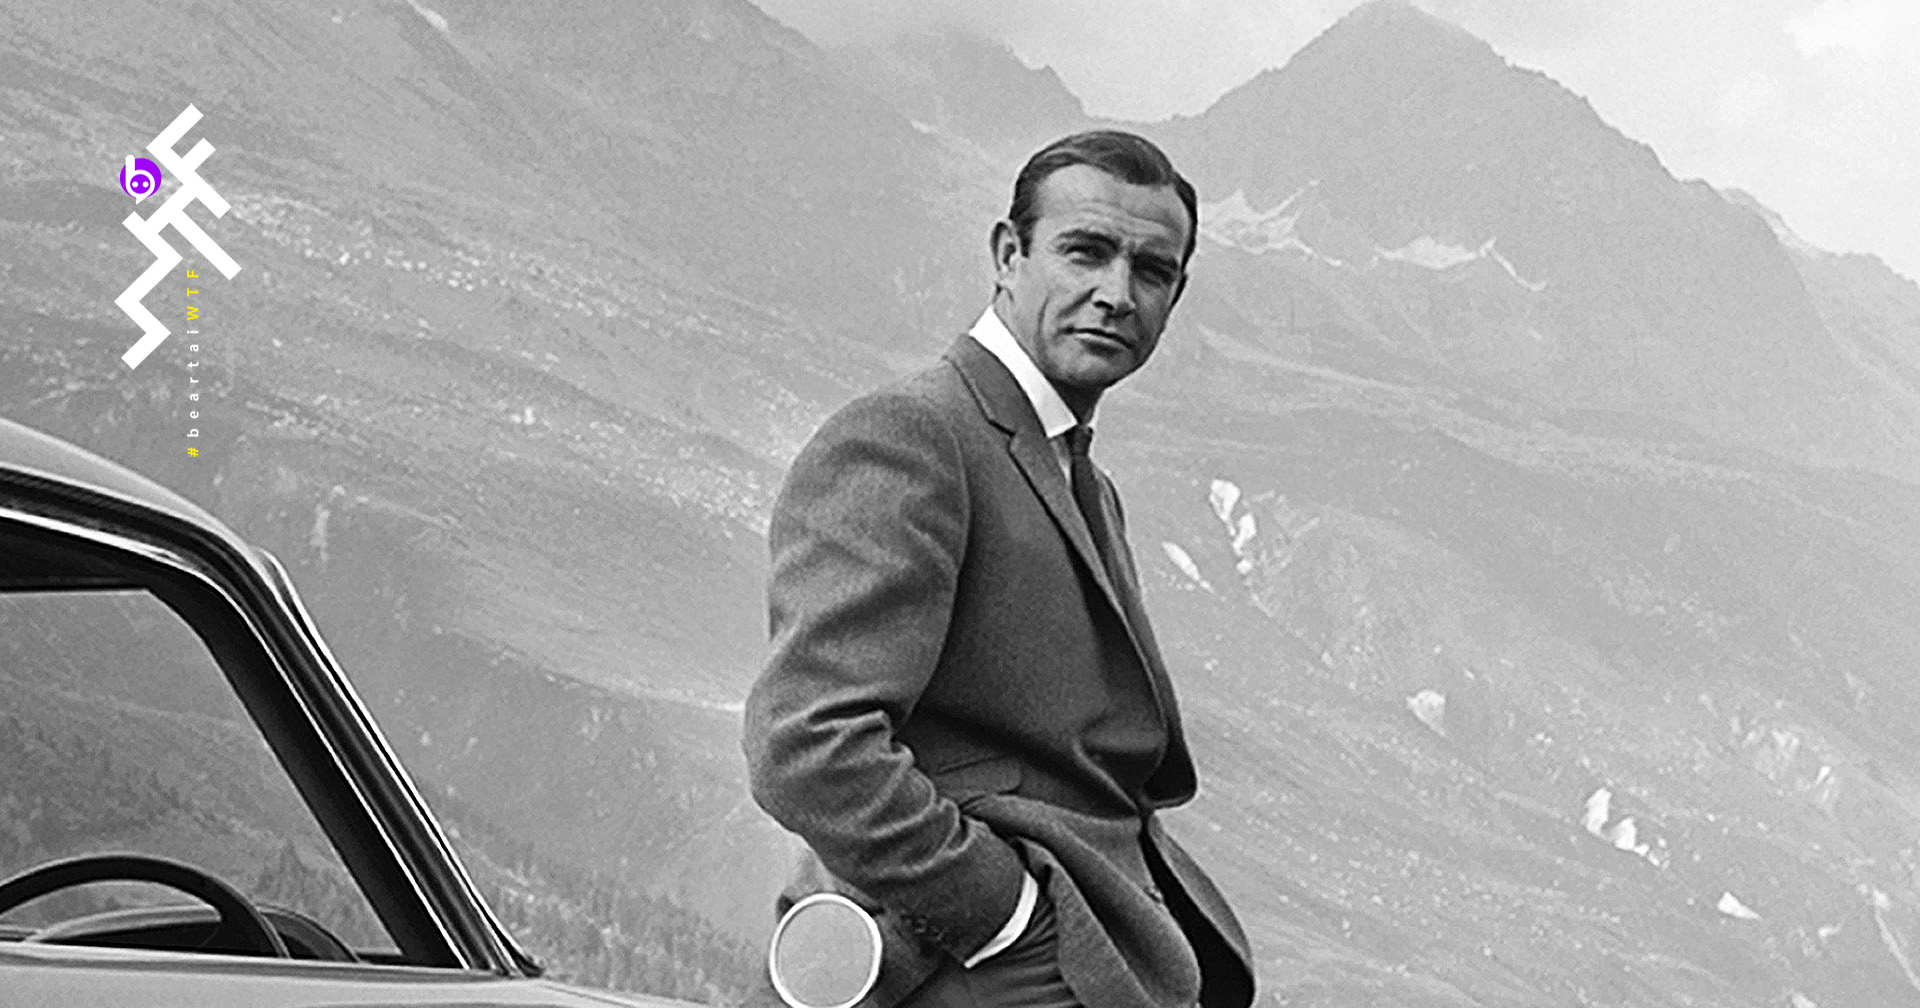 อาลัย! เซอร์ ฌอน คอนเนอรี ผู้รับบท James Bond คนแรก เสียชีวิตในวัย 90 ปี